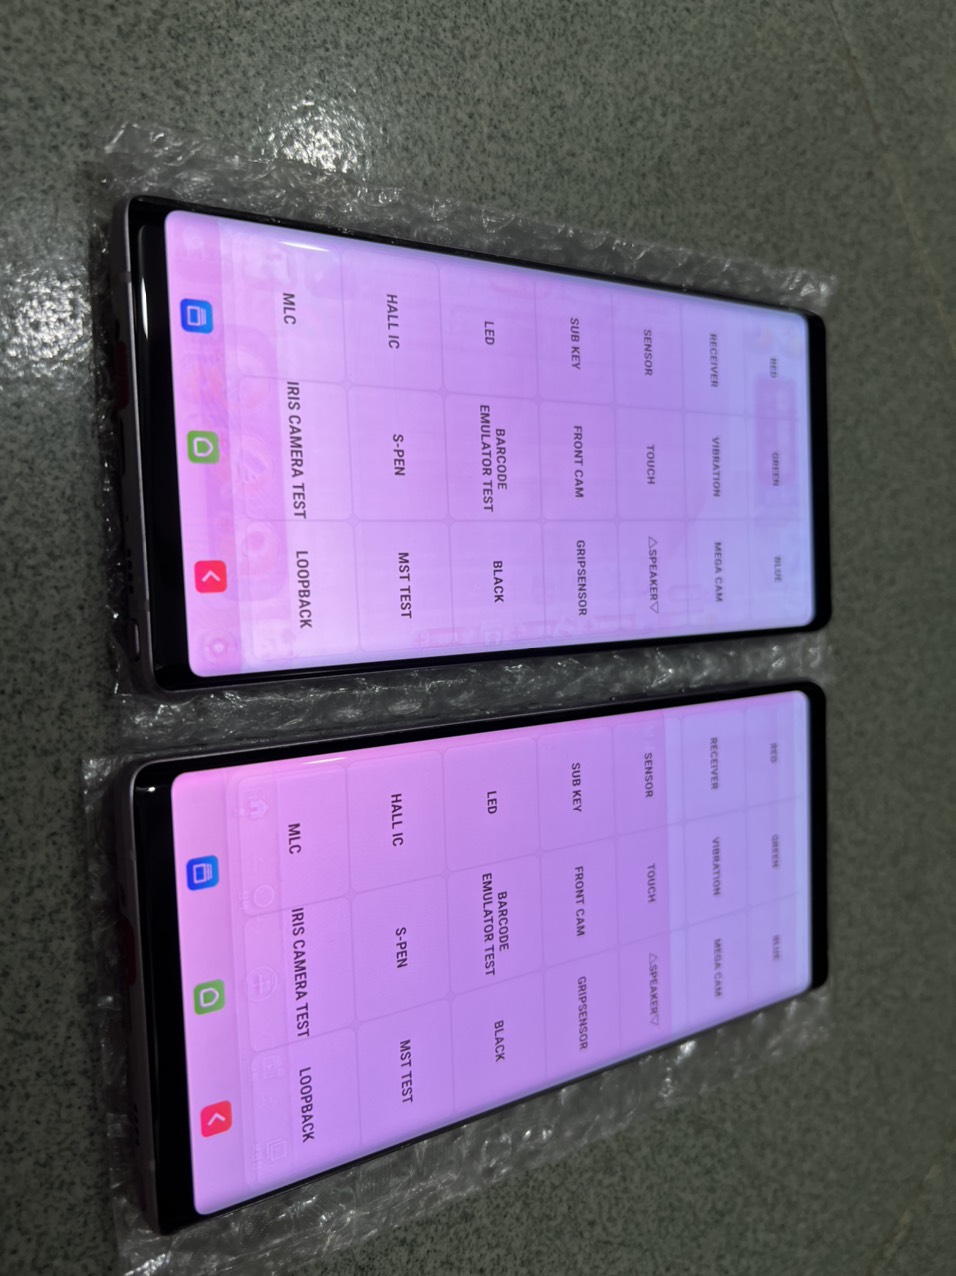 điện thoại Samsung Galaxy Note 9  máy Chính Hãng, Ram 6G bộ nhớ 128GB, Hệ điều hành: Android Camera sau: Chính 12 MP & Phụ 12MP Camera trước: 8MP CPU: Exynos 9810 8 nhân RAM: 6GB 128GB ,Camera sau: Chính 12MP , màn ám, lưu ảnh nặng  đủ màu